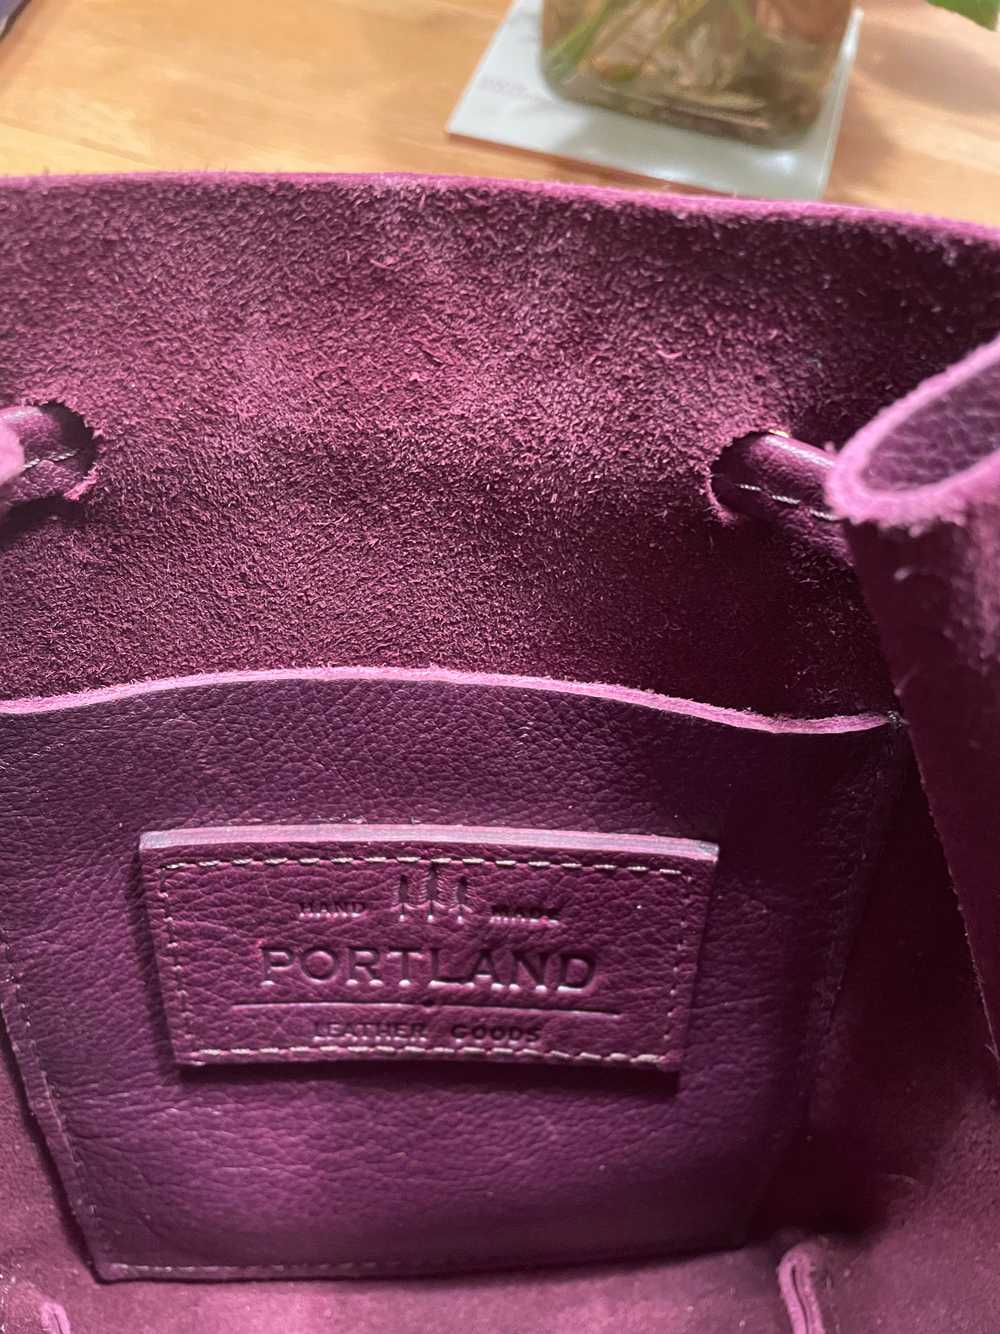 Portland Leather Bucket Bag - image 2